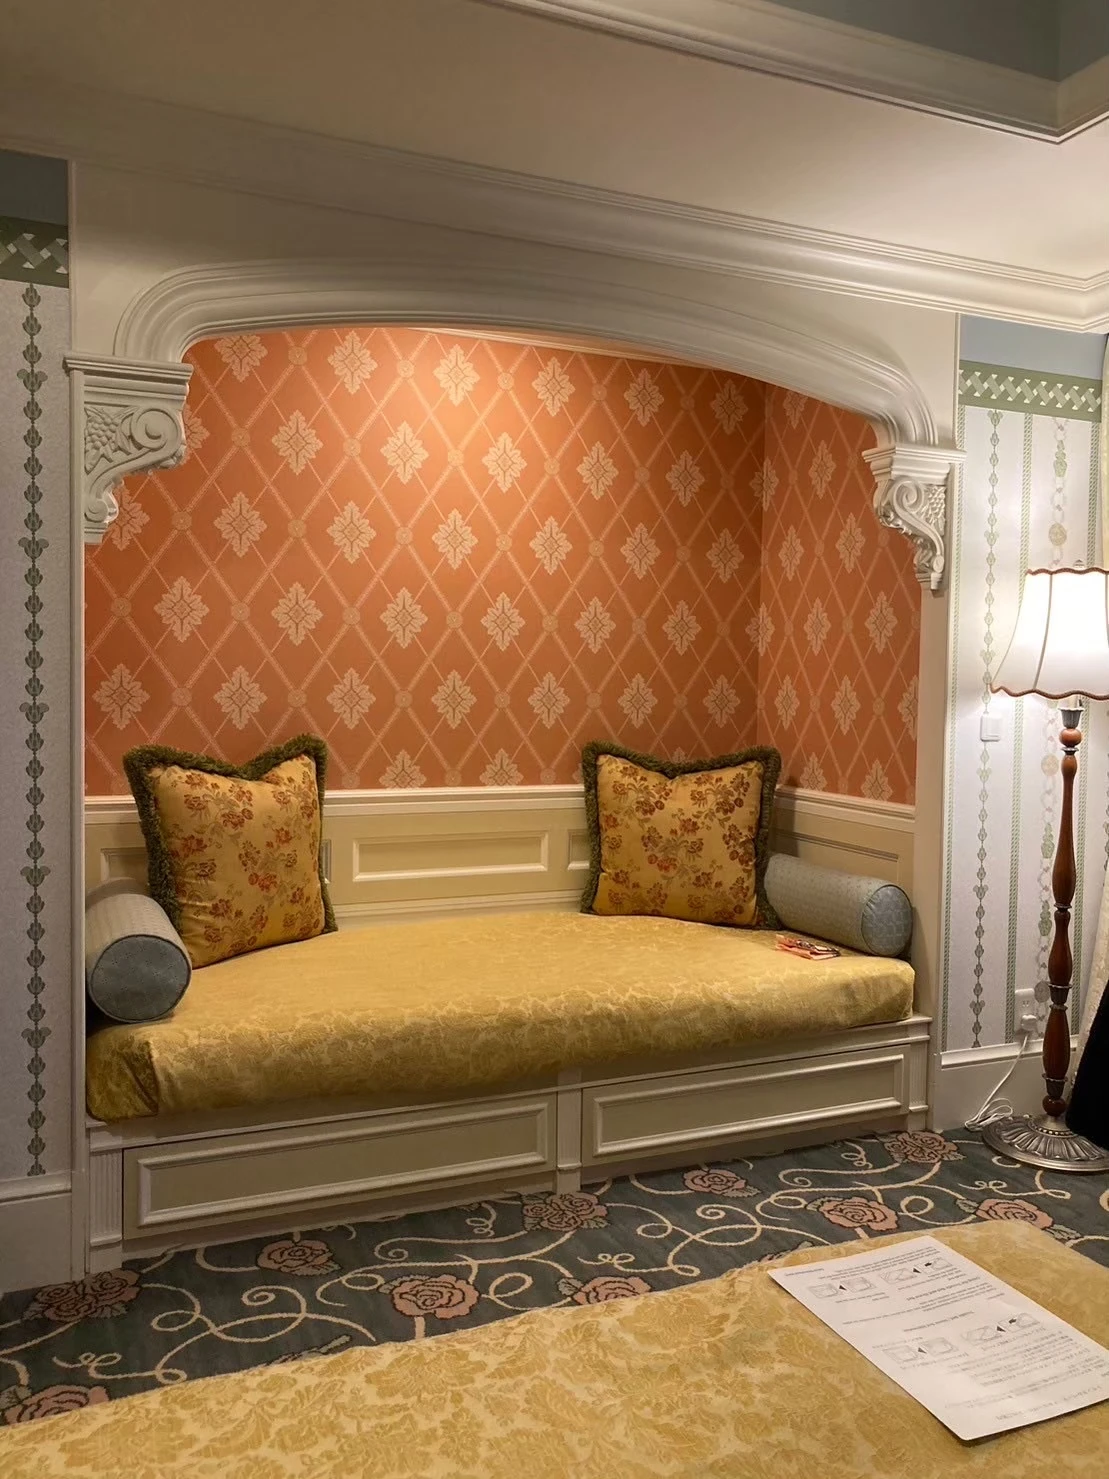 ディズニーランドホテルの客室のソファ